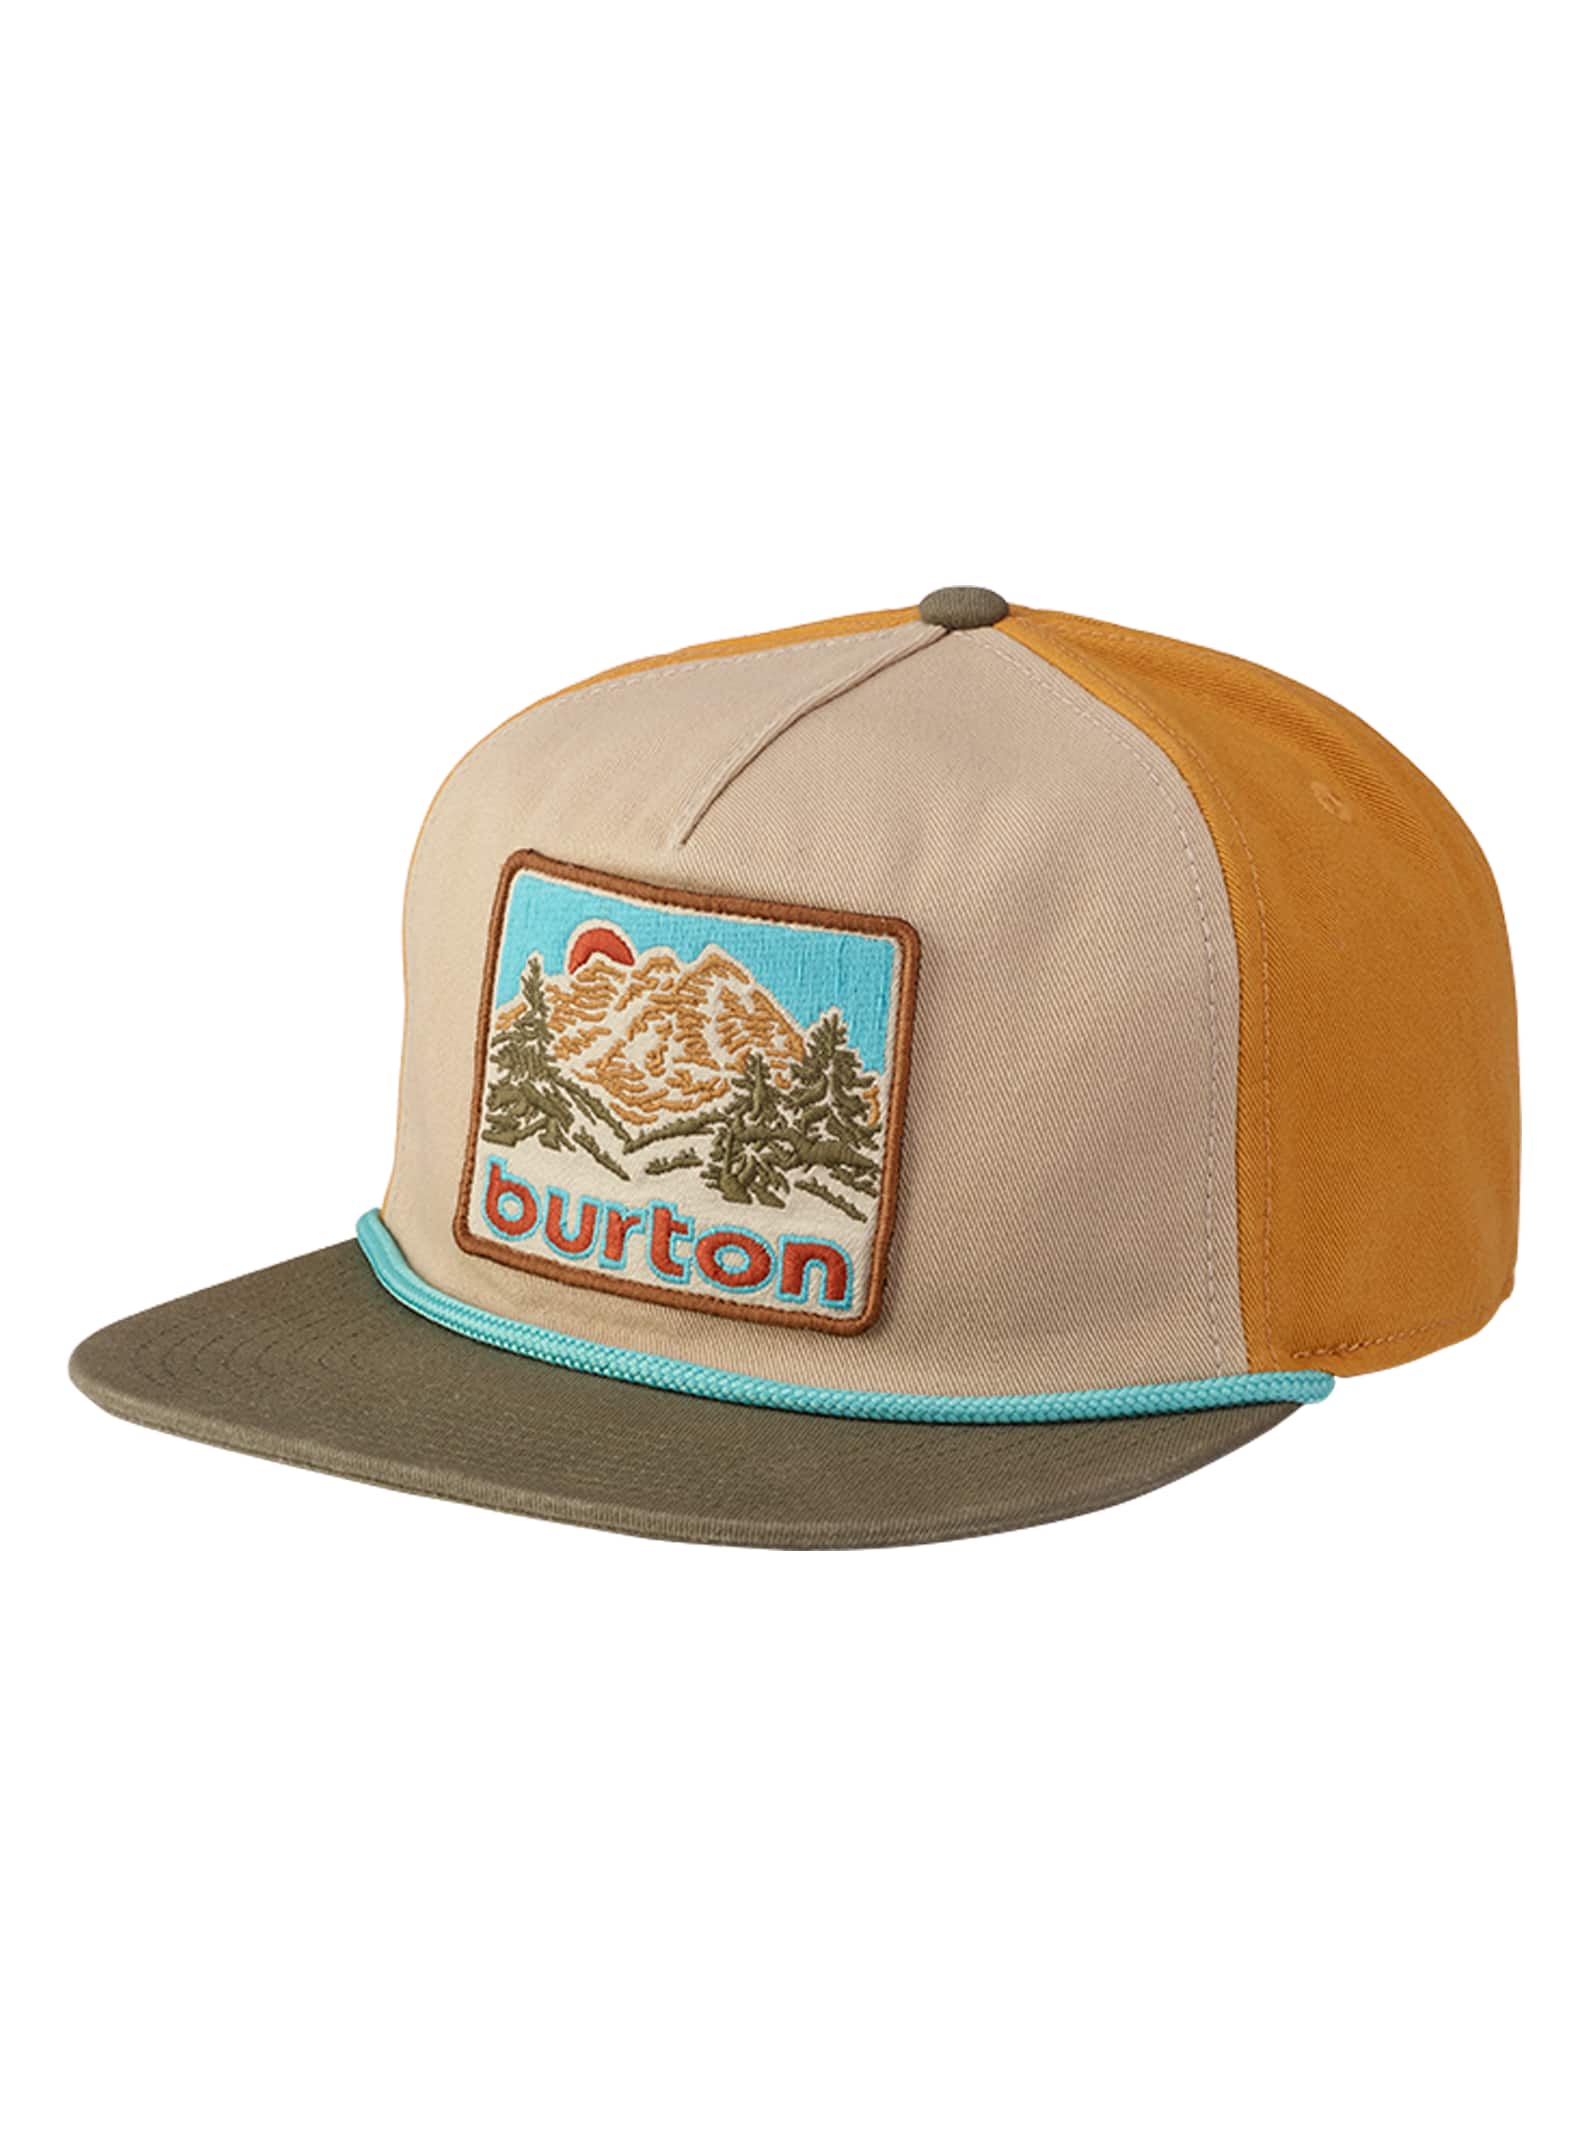 Burton Buckweed Snapback Hat | Burton.com Winter 2020 US